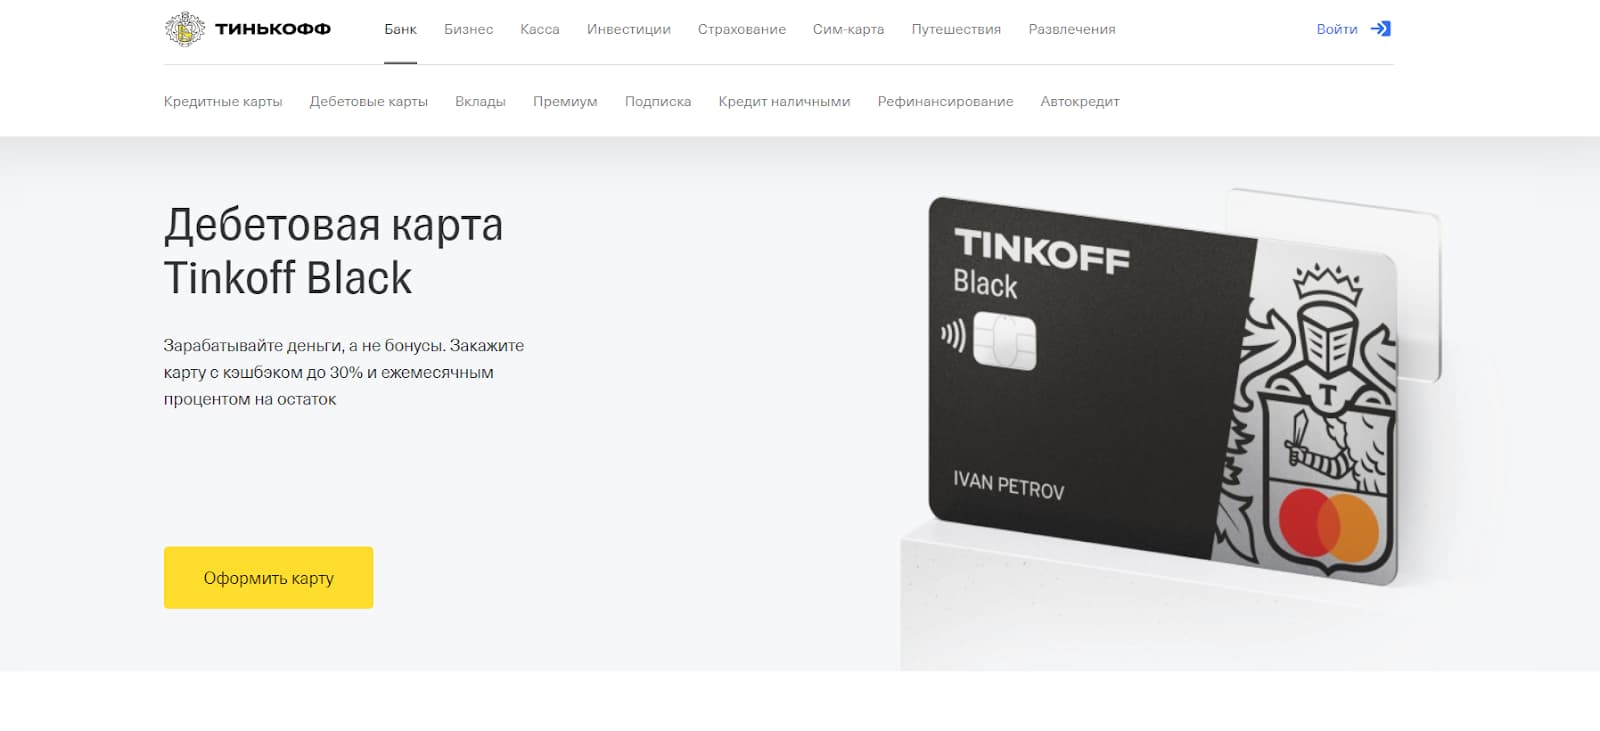 Главная страница сайта банка «Тинькофф»